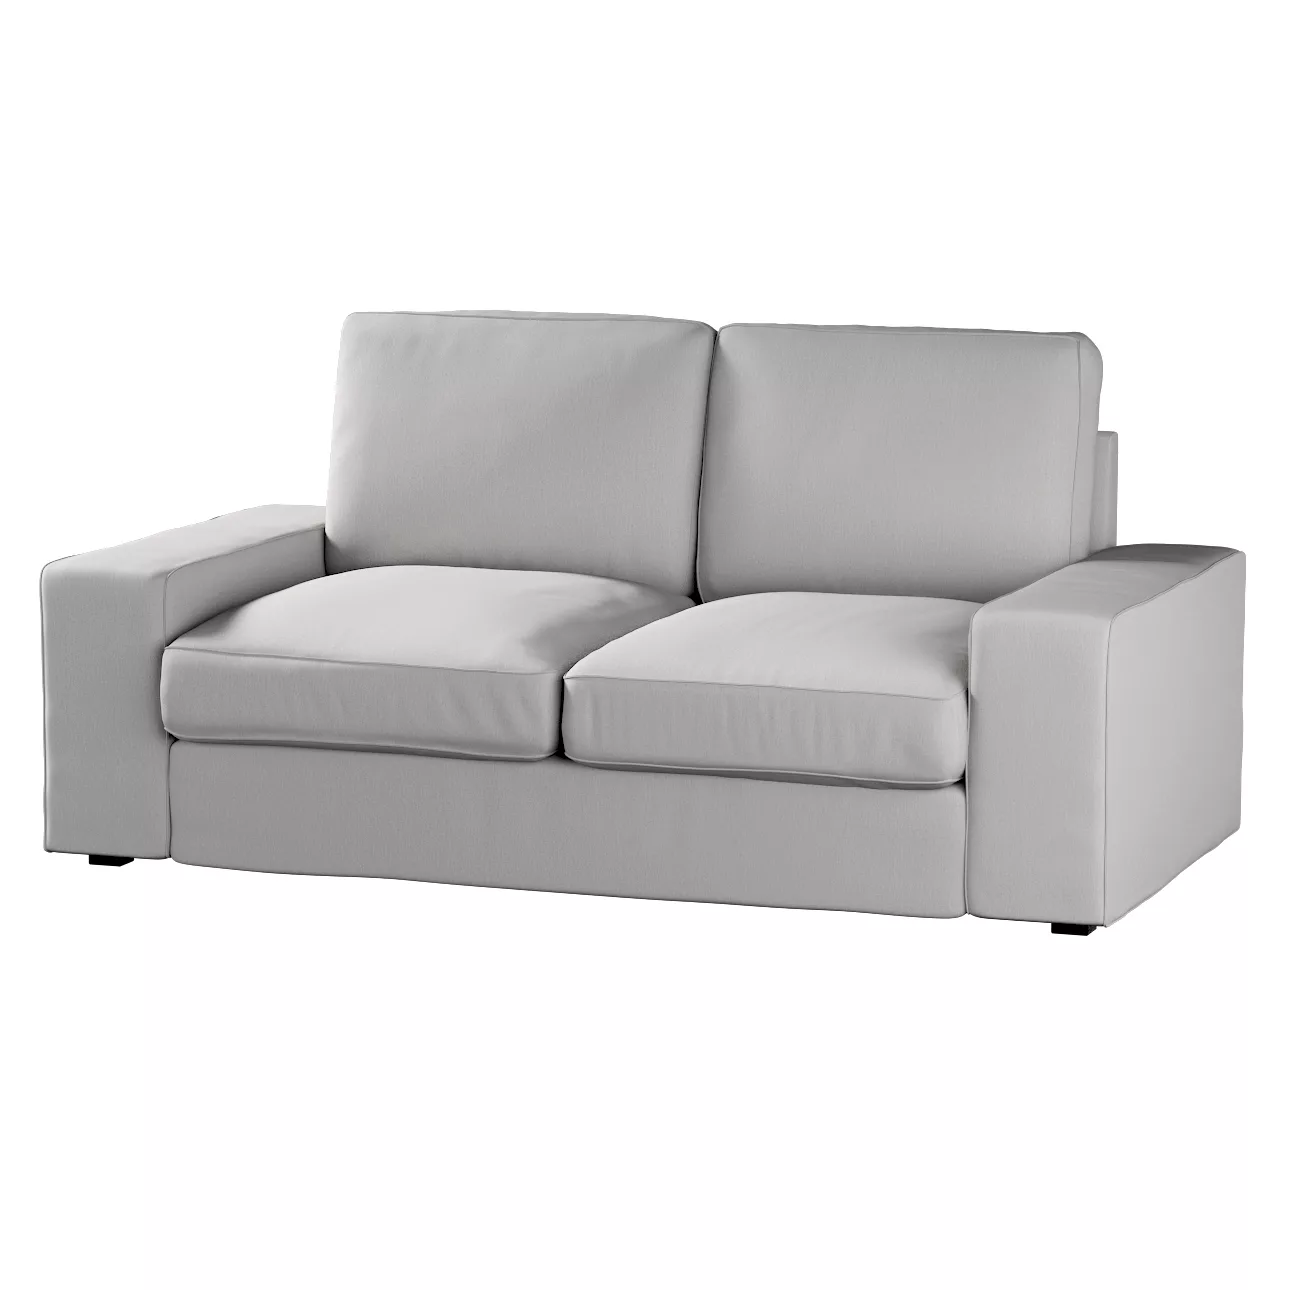 Bezug für Kivik 2-Sitzer Sofa, hellgrau, Bezug für Sofa Kivik 2-Sitzer, Che günstig online kaufen